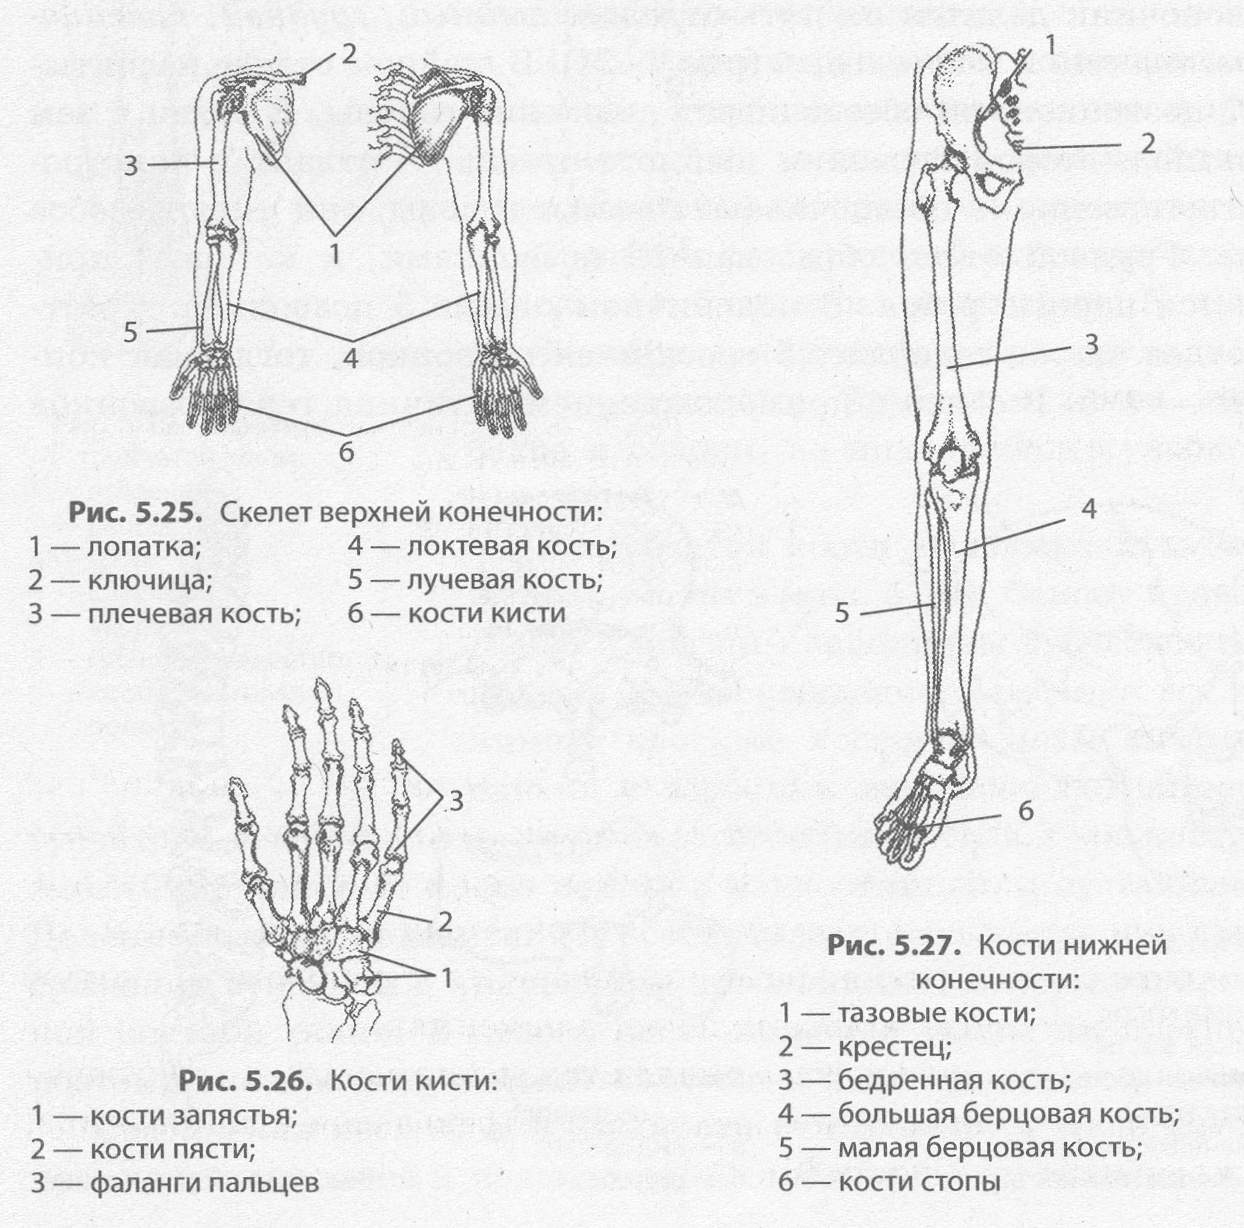 Скелет верхней конечности человека пояс конечностей. Схема строения конечностей человека. Строение скелета верхних и нижних конечностей. Скелет верхних и нижних конечностей схема. Кости верхней и нижней конечности строение.